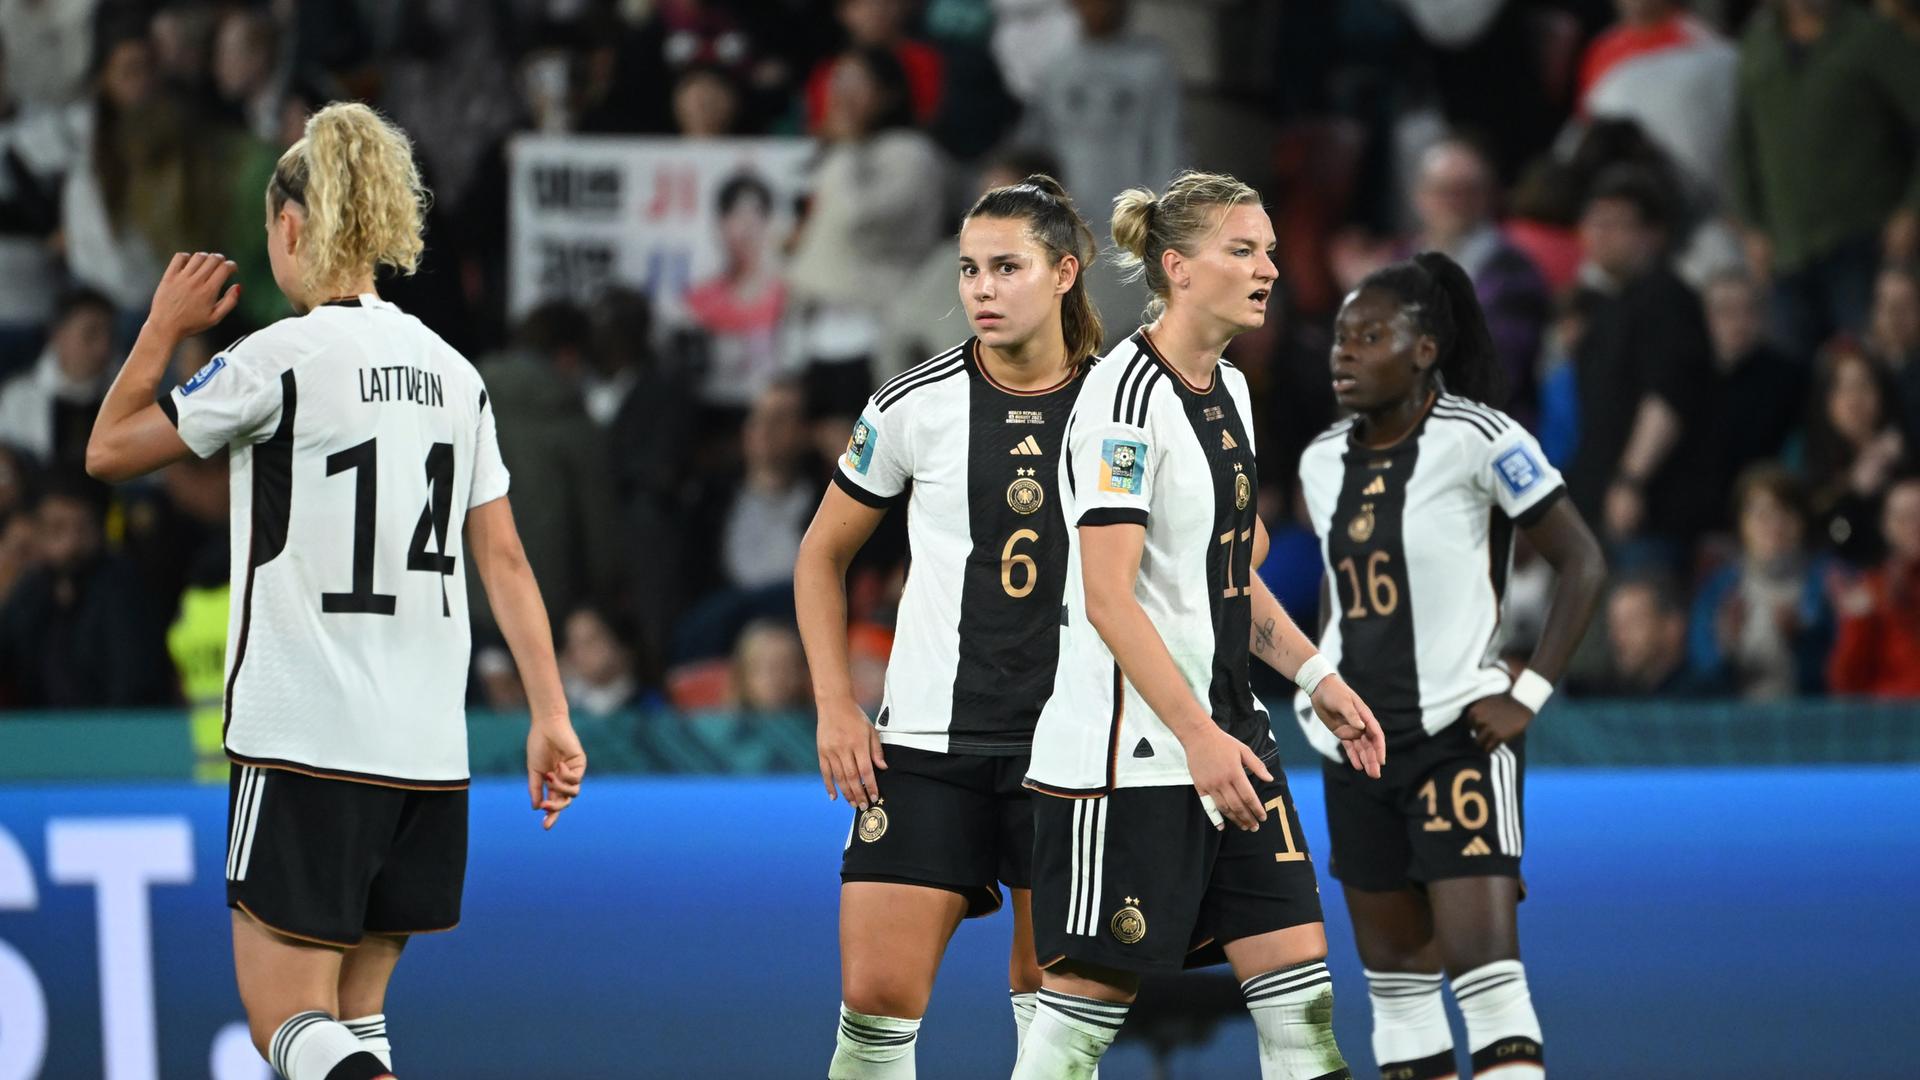 Das Foto zeigt die deutschen Spielerinnen Lena Lattwein, Lena Oberdorf, Alexandra Popp und Nicole Anyomi nach dem Spiel gegen Südkorea bei der Frauen-WM.